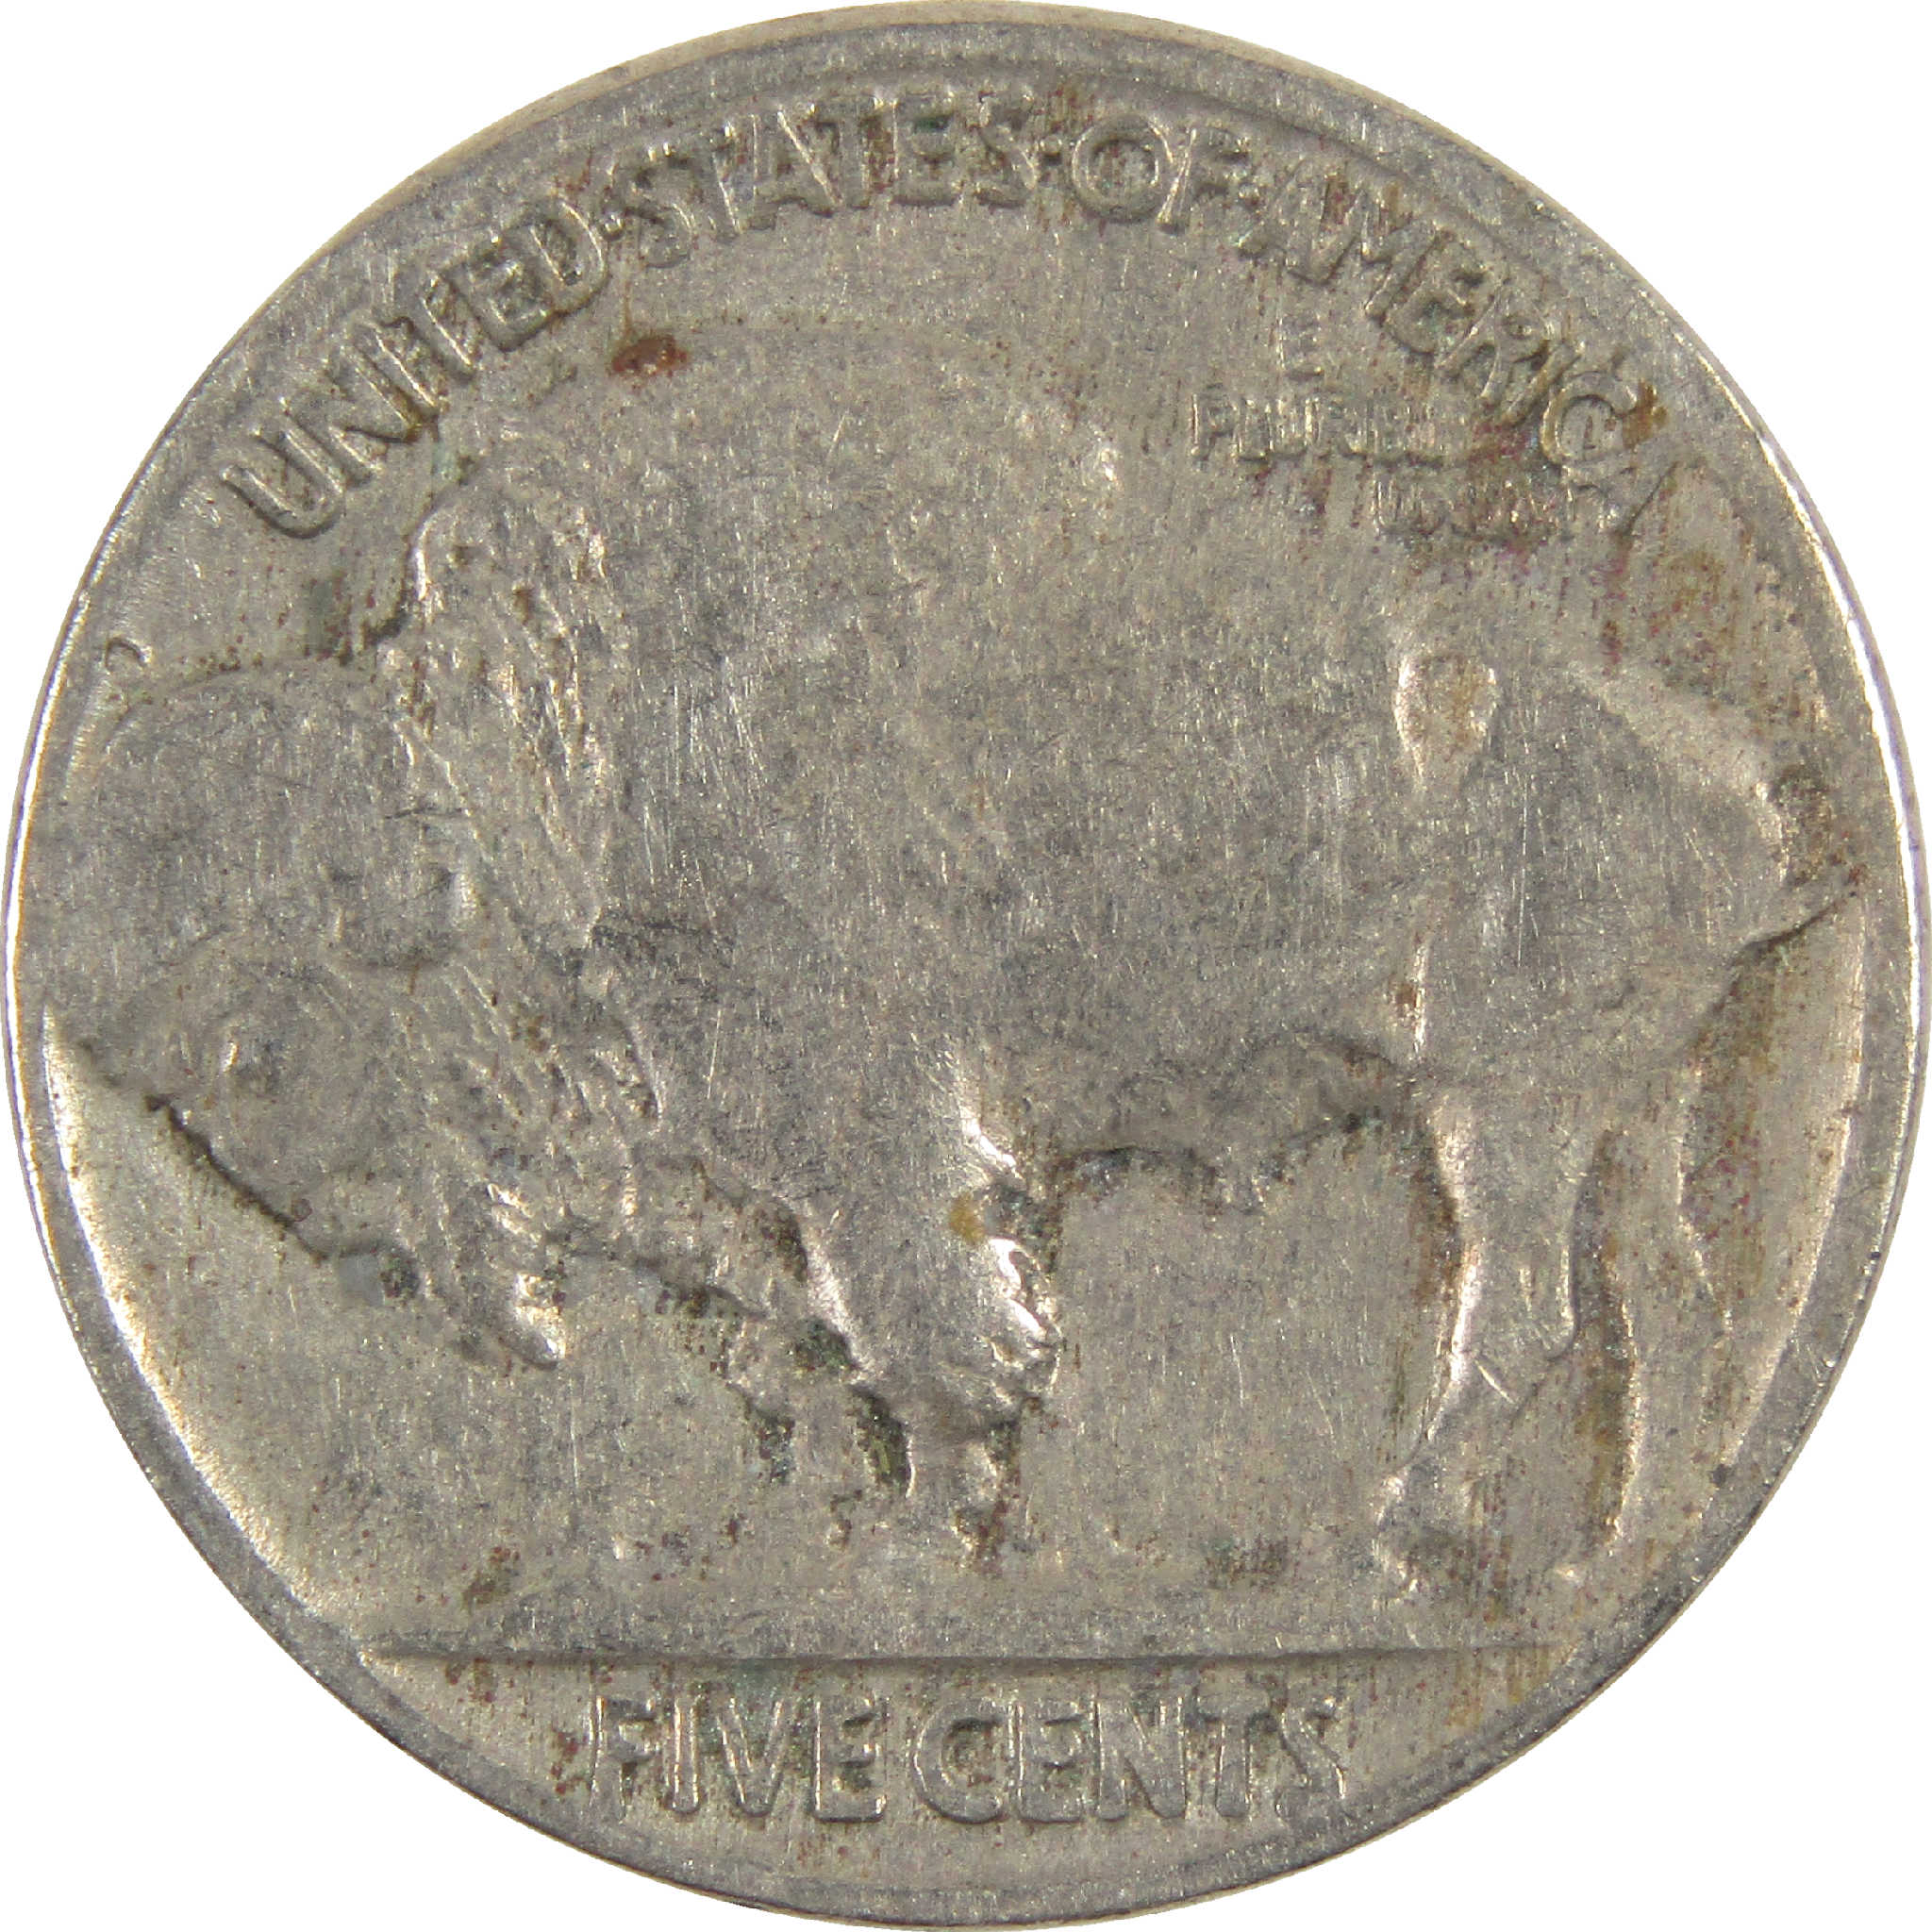 1934 Indian Head Buffalo Nickel G Good 5c Coin